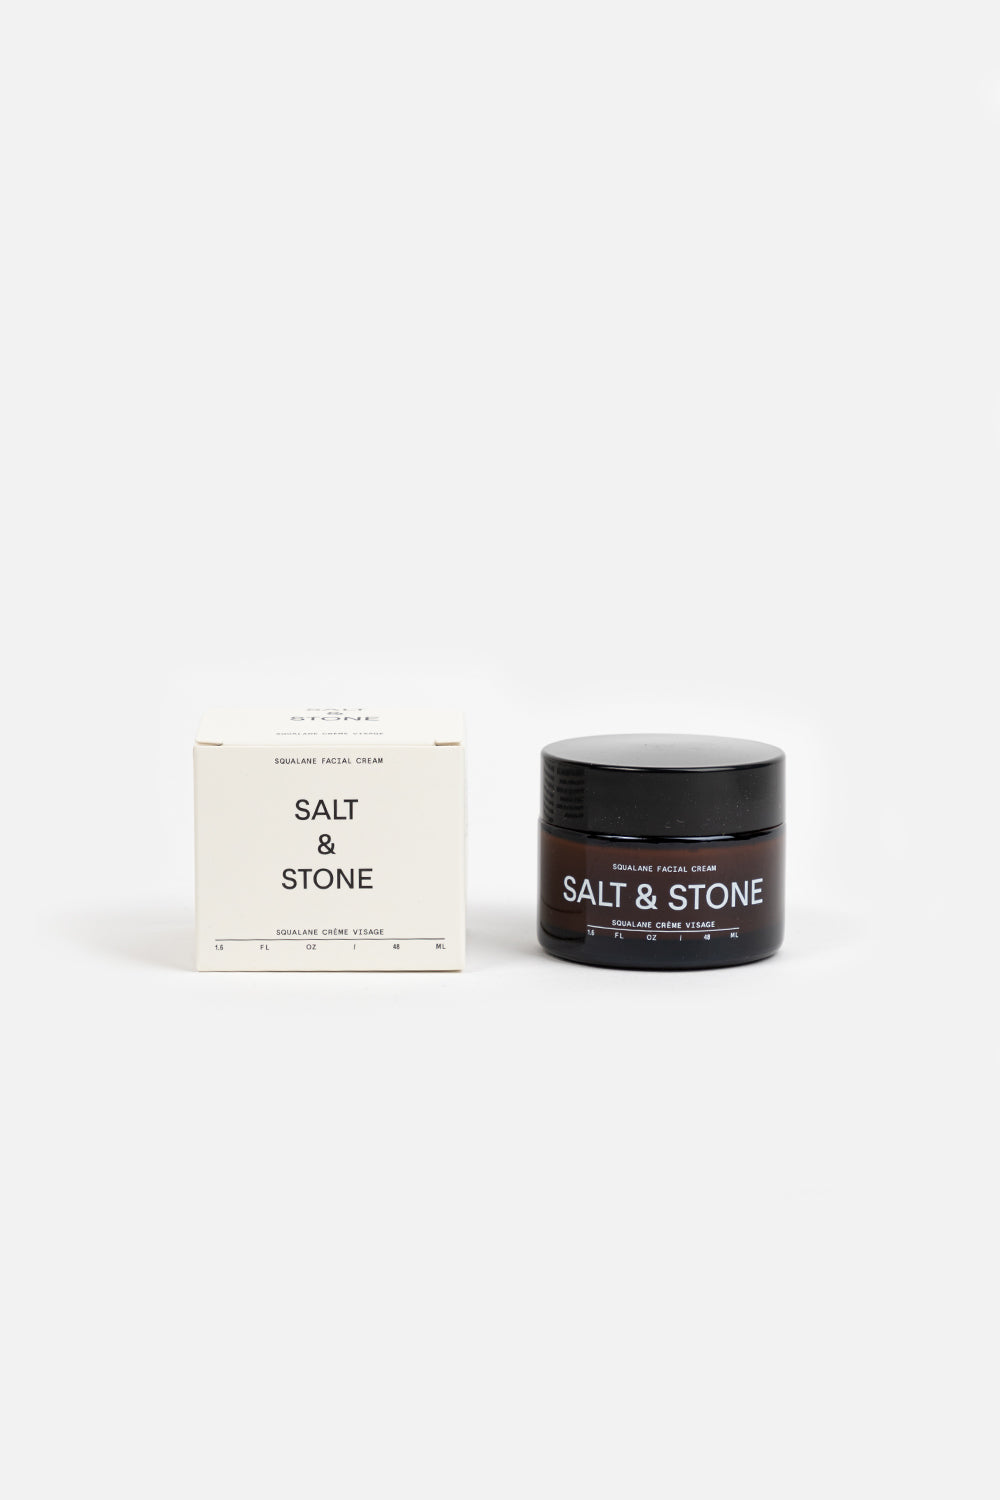 salt and stone squalane facial cream 